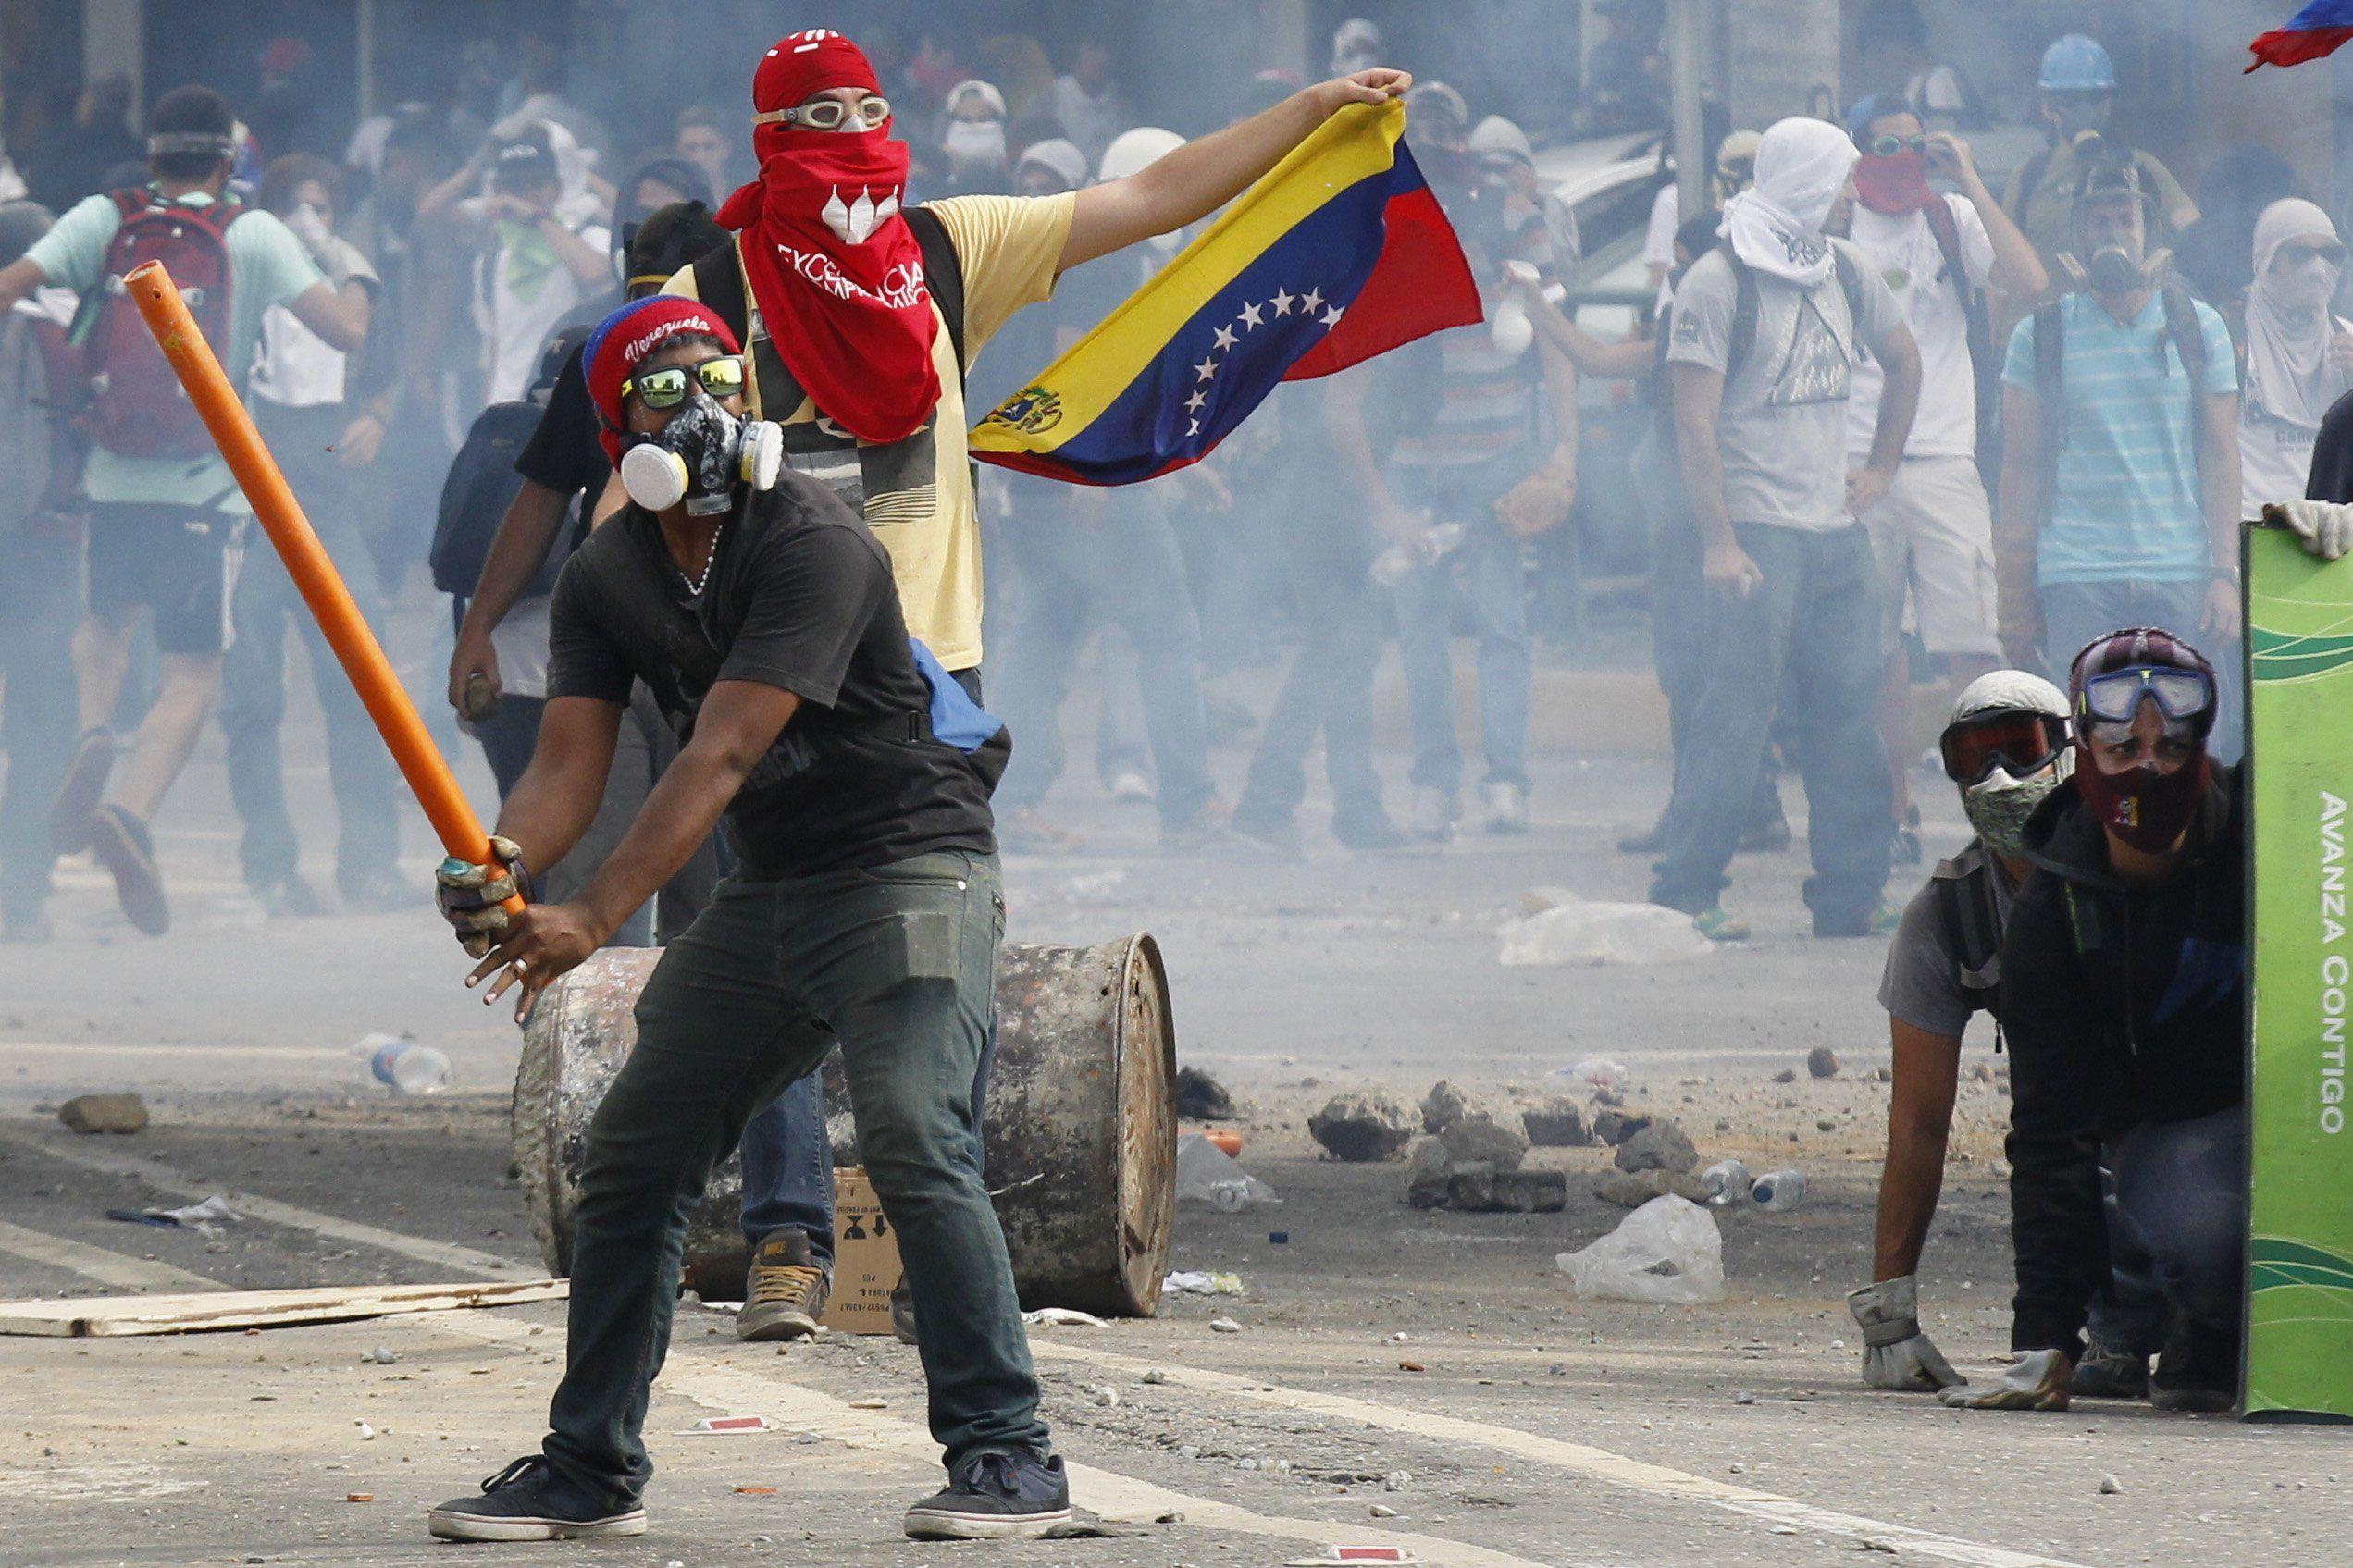 США работает над сменой власти в Венесуэле – Помпео